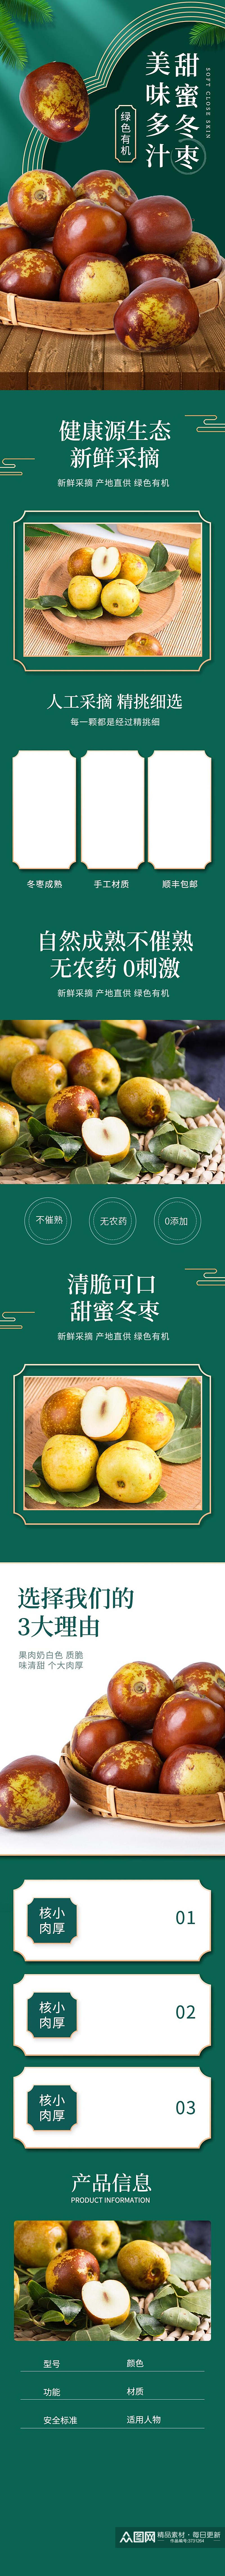 美味冬枣食品宣传电商详情页素材